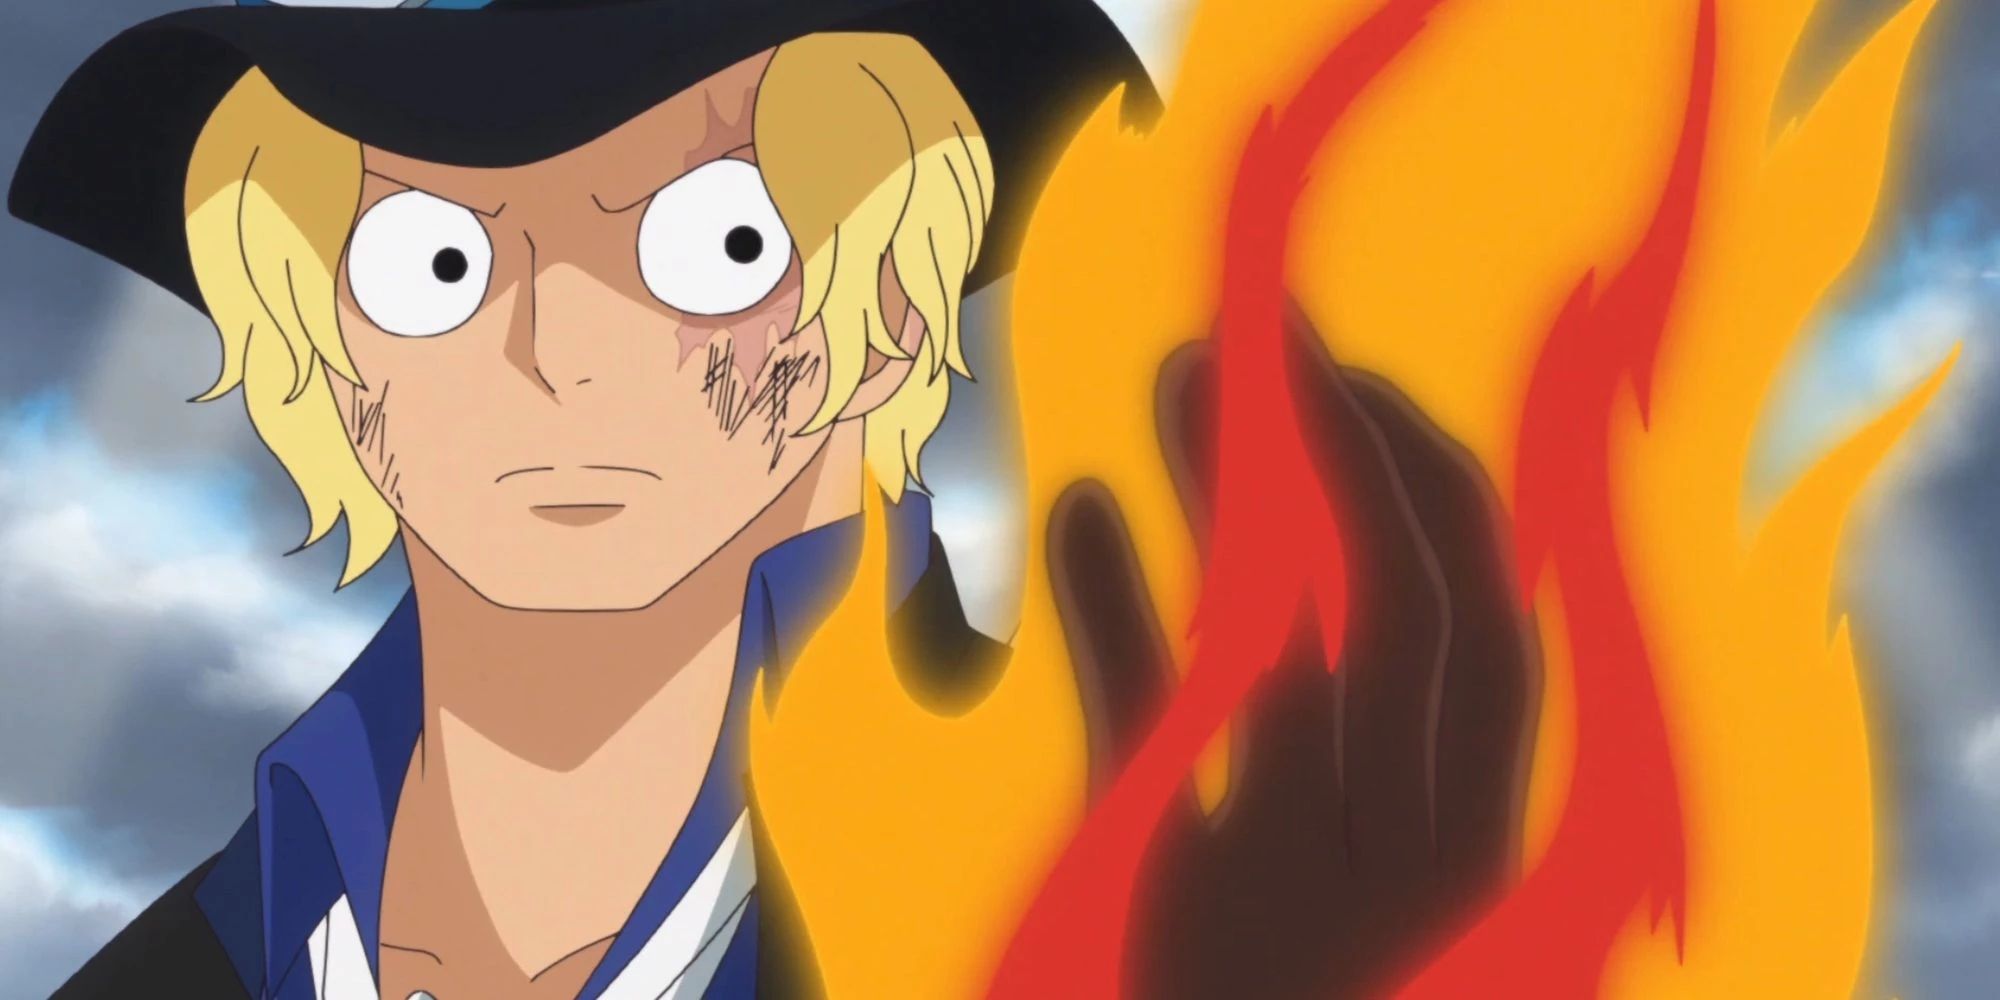 Sabo avec une cicatrice sur le visage dans One Piece.